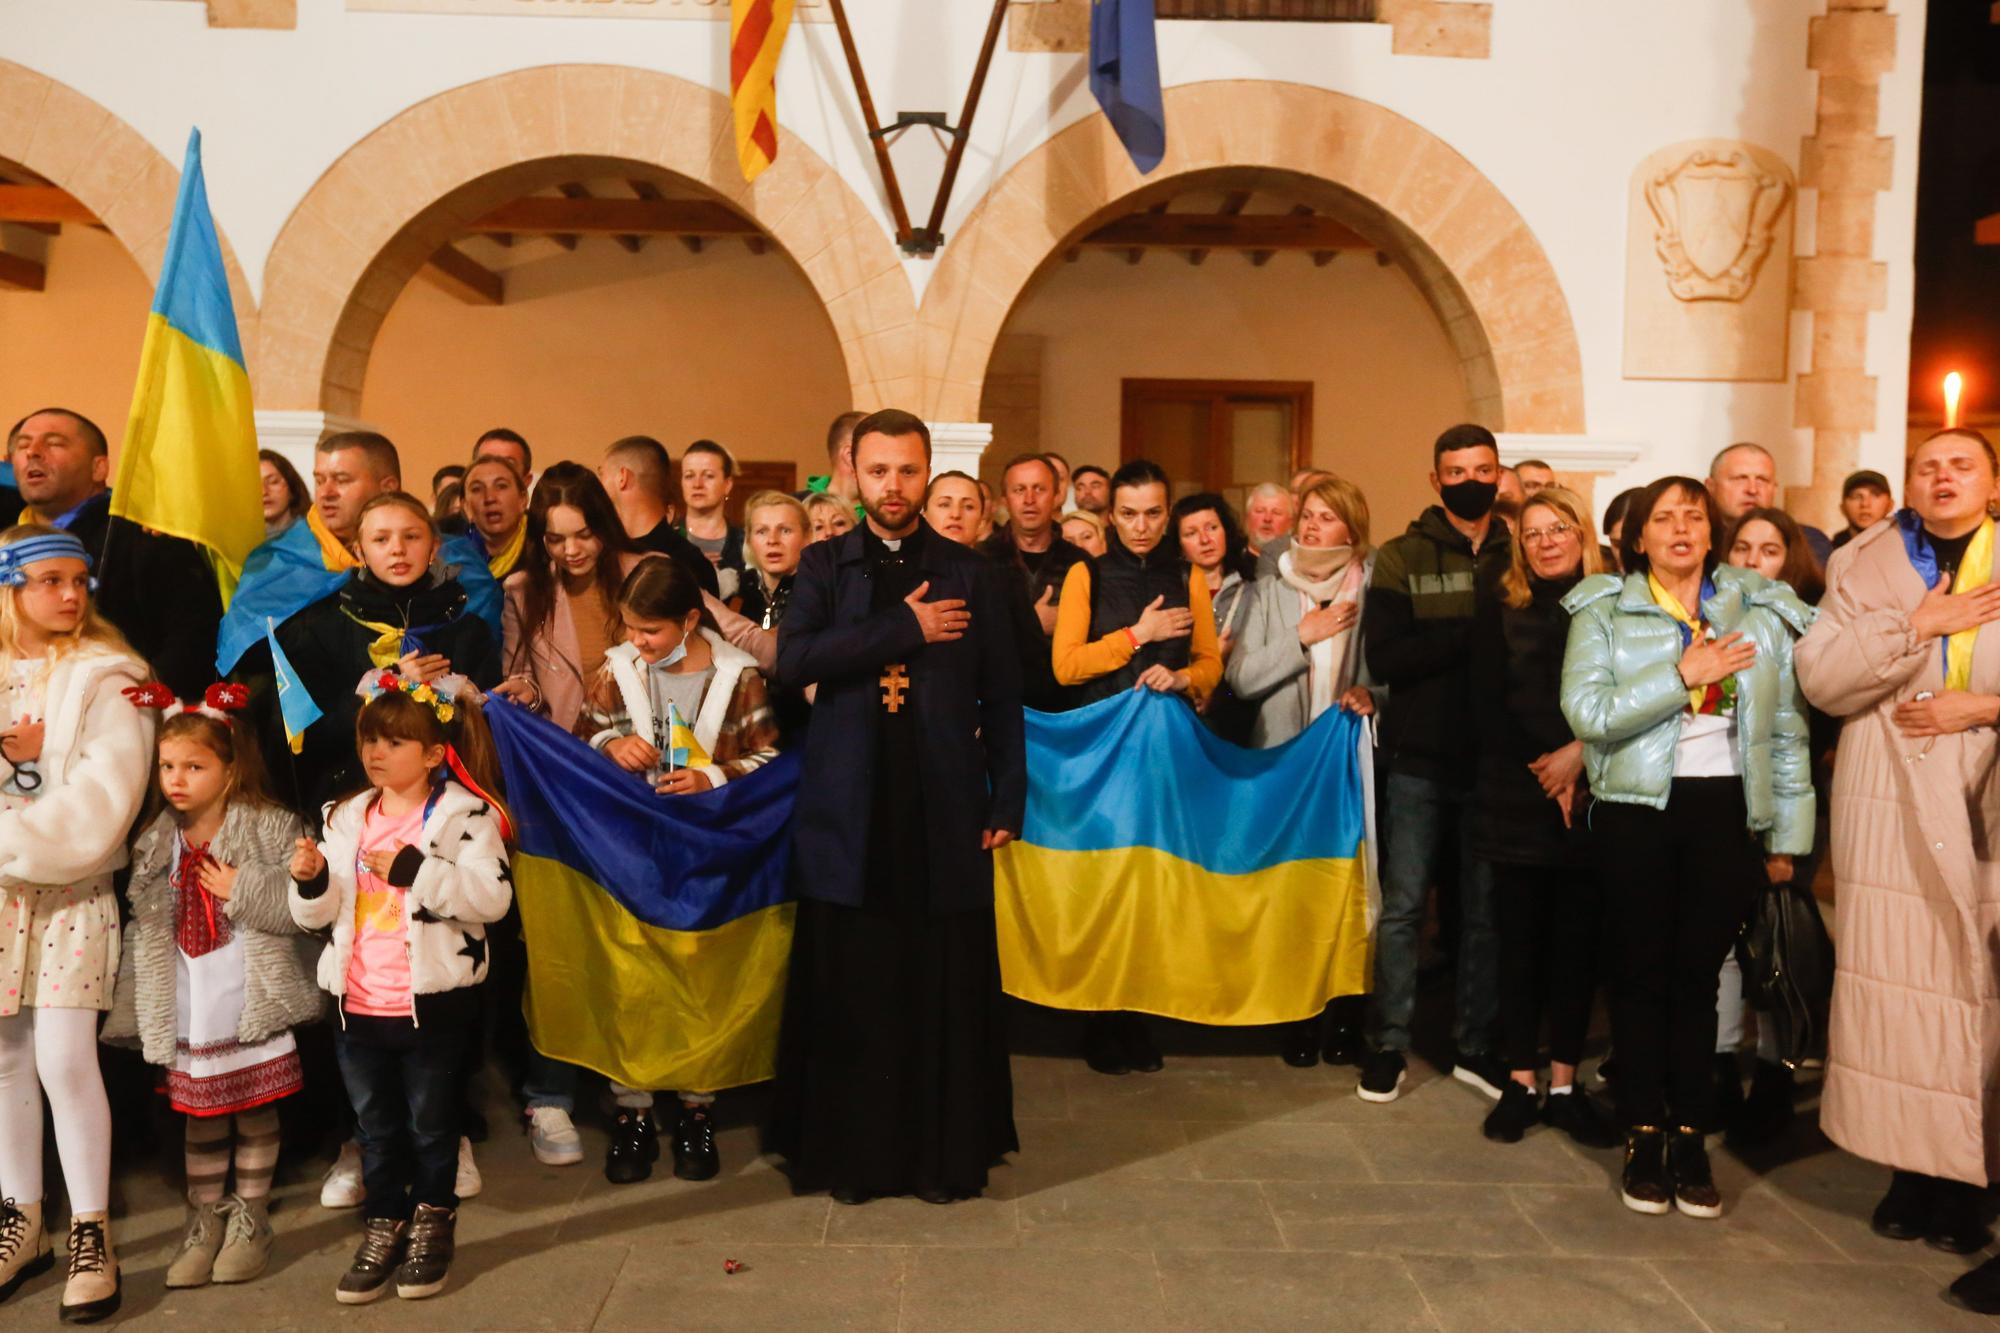 Galería de imágenes: los ucranianos de Ibiza rezan y se concentran por la paz